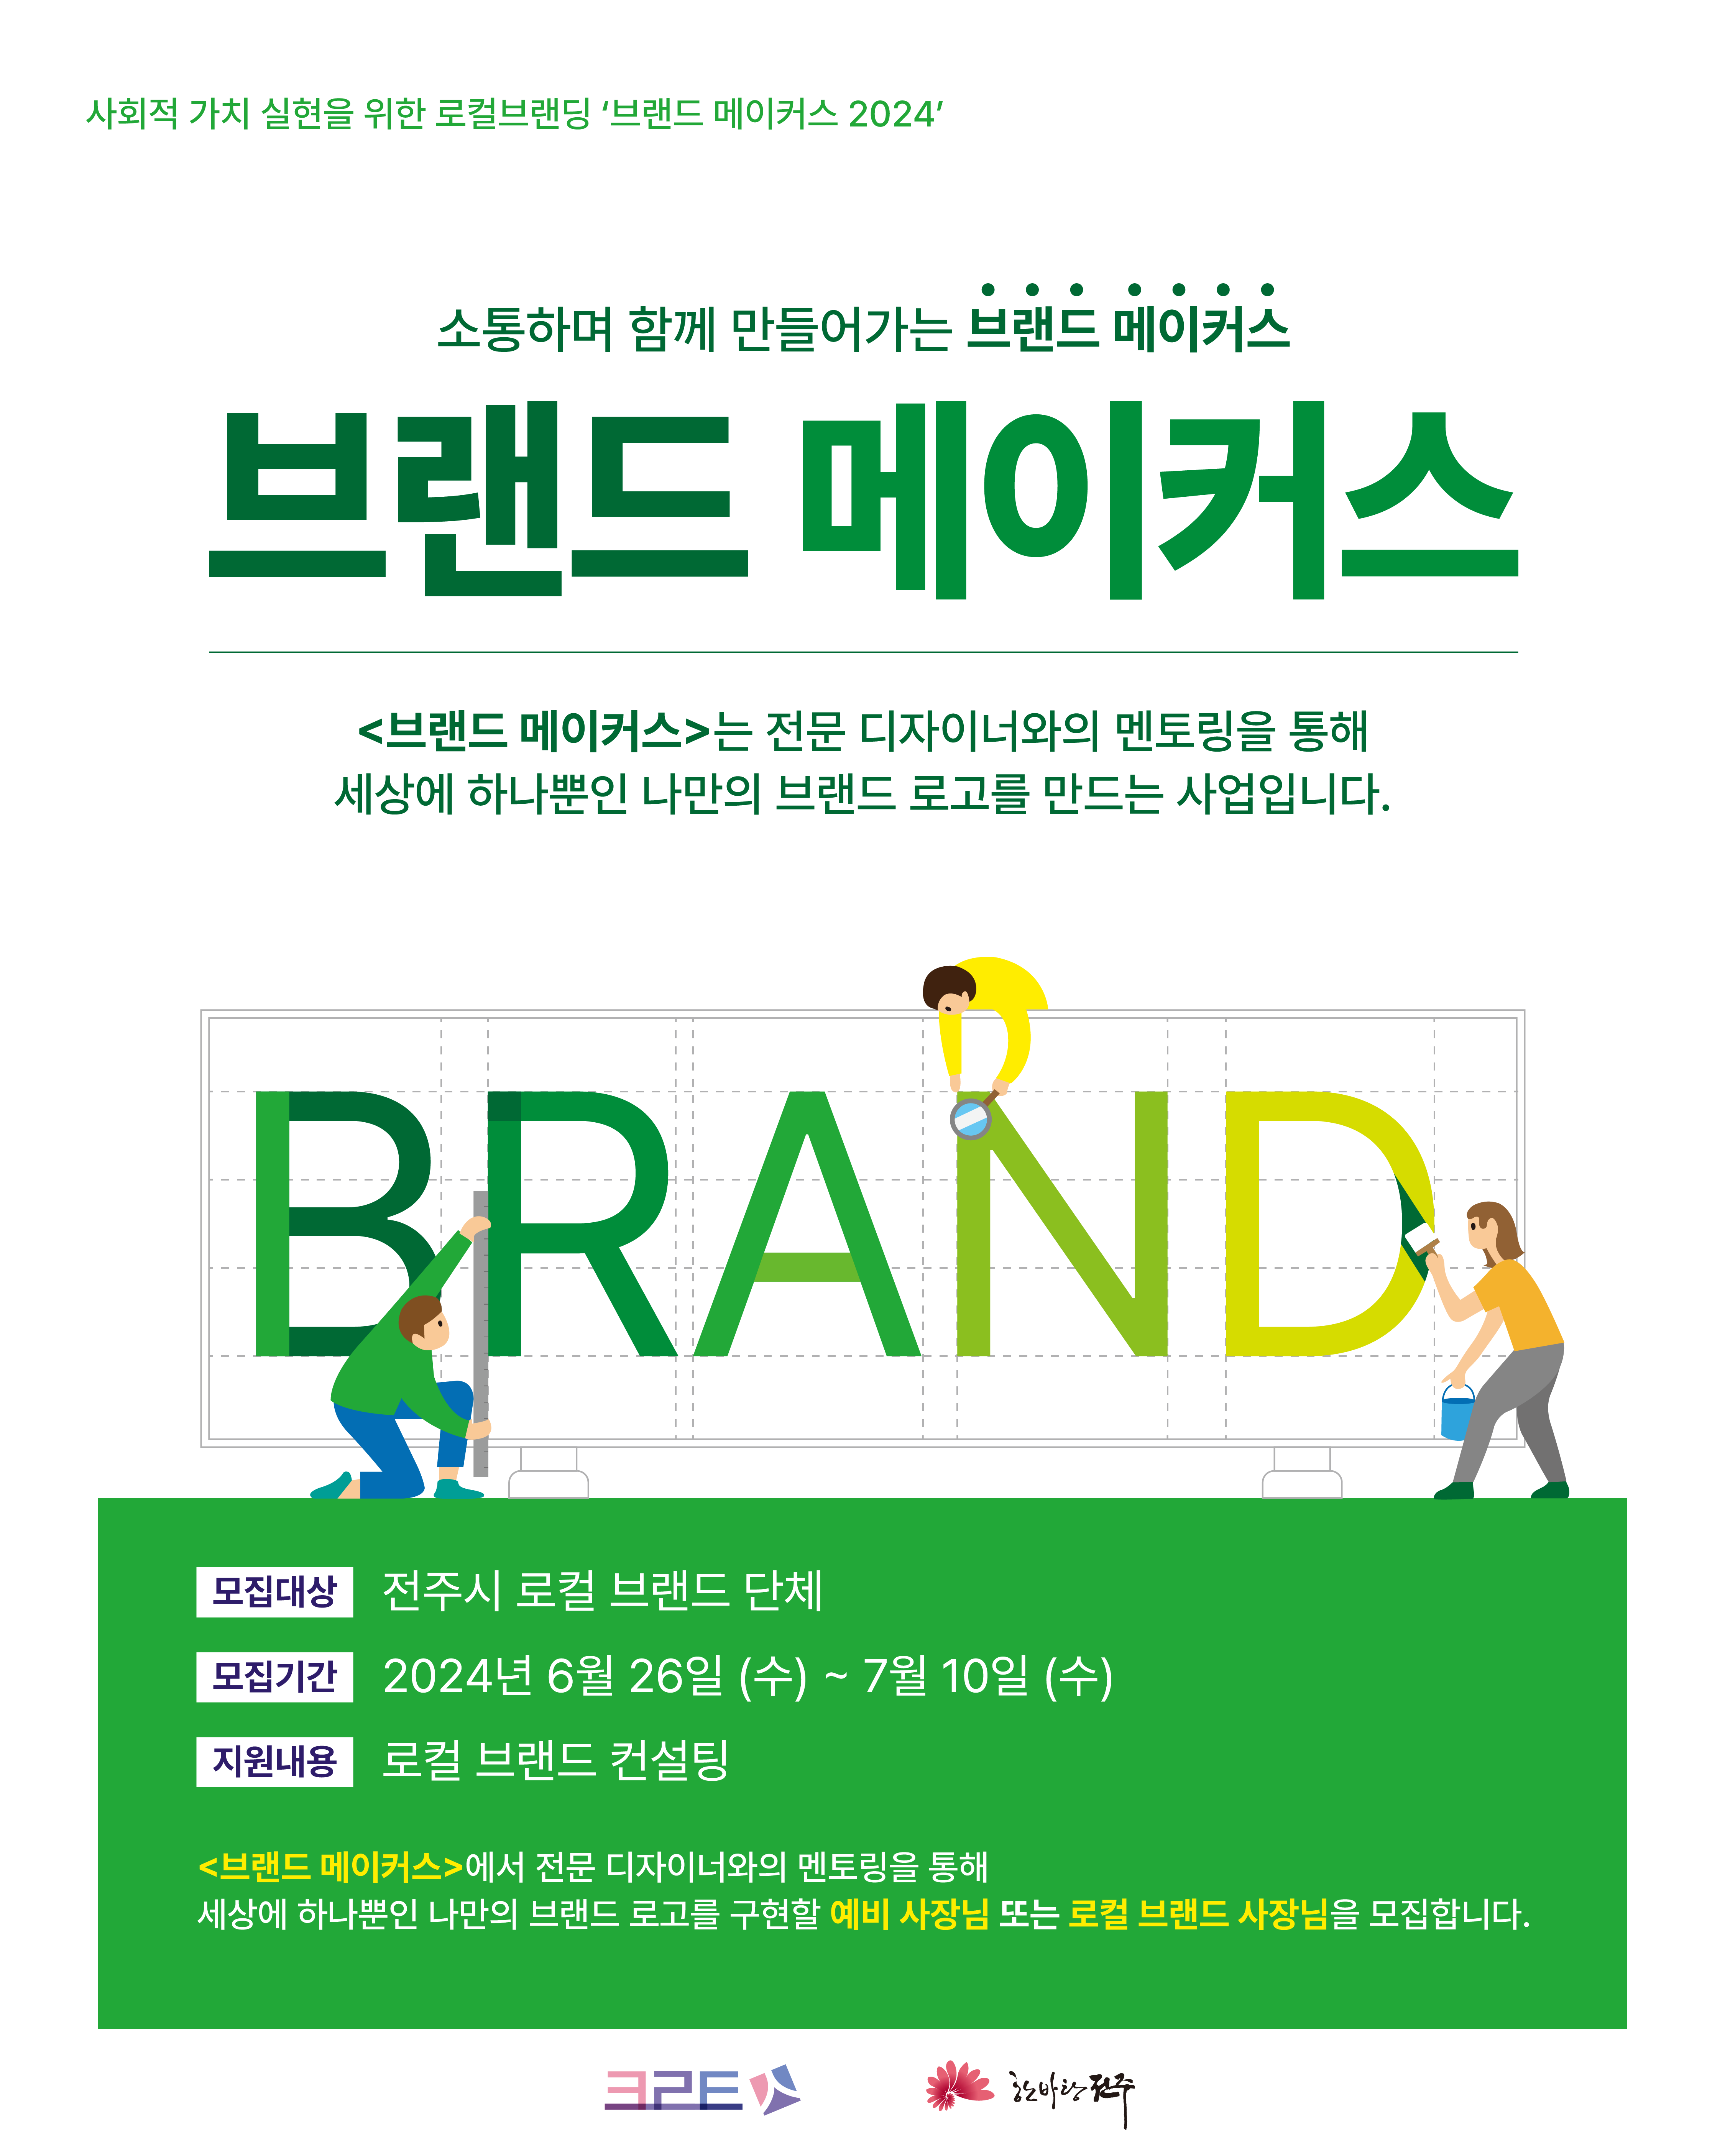 240625_브랜드메이커스 포스터_최종 (1).png